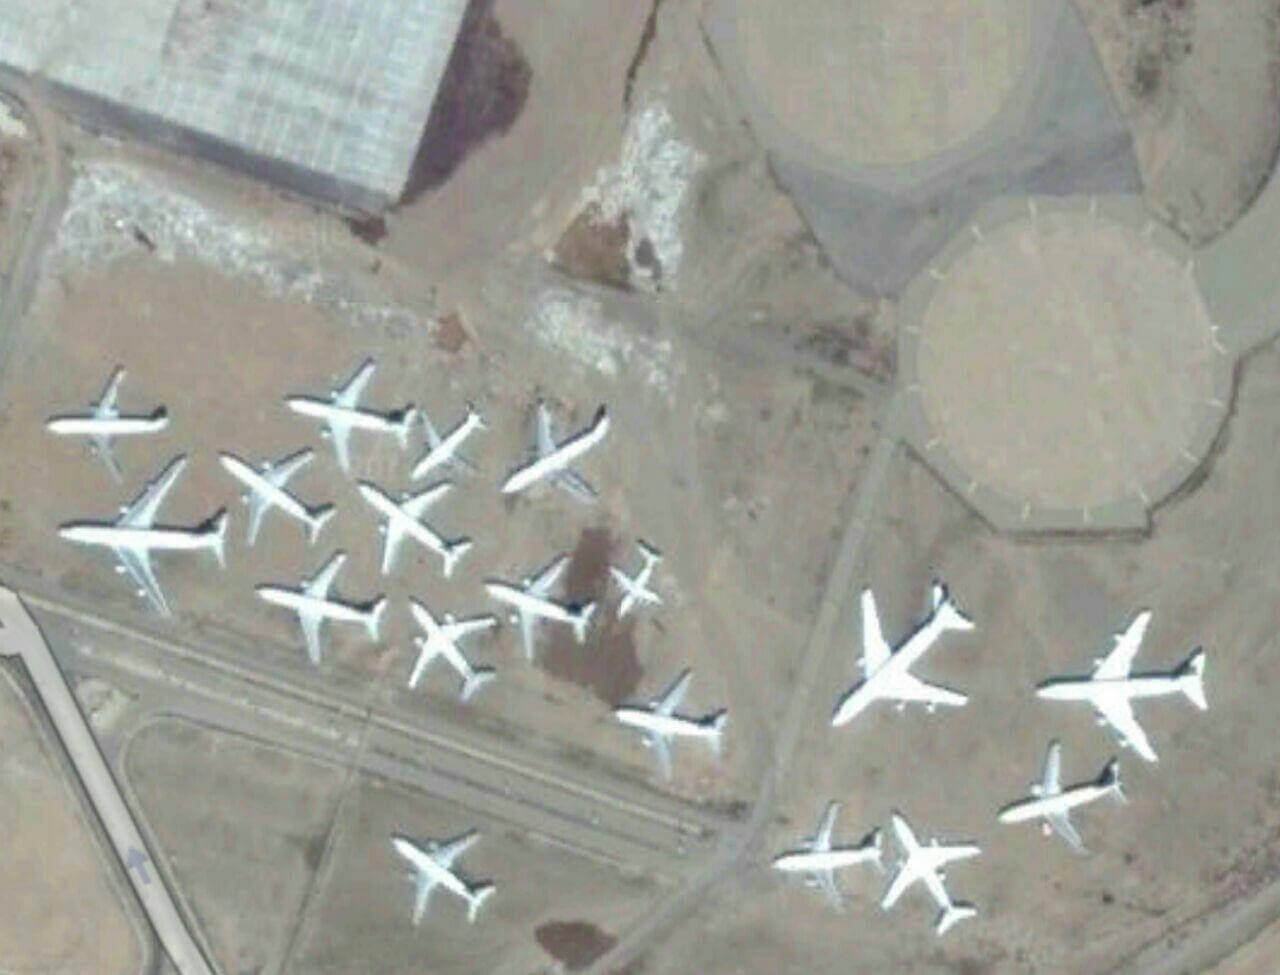 عکس های گورستان هواپیماهای ایران,تصاویر گورستان هواپیماهای ایران,گورستان هواپیماهای ایران